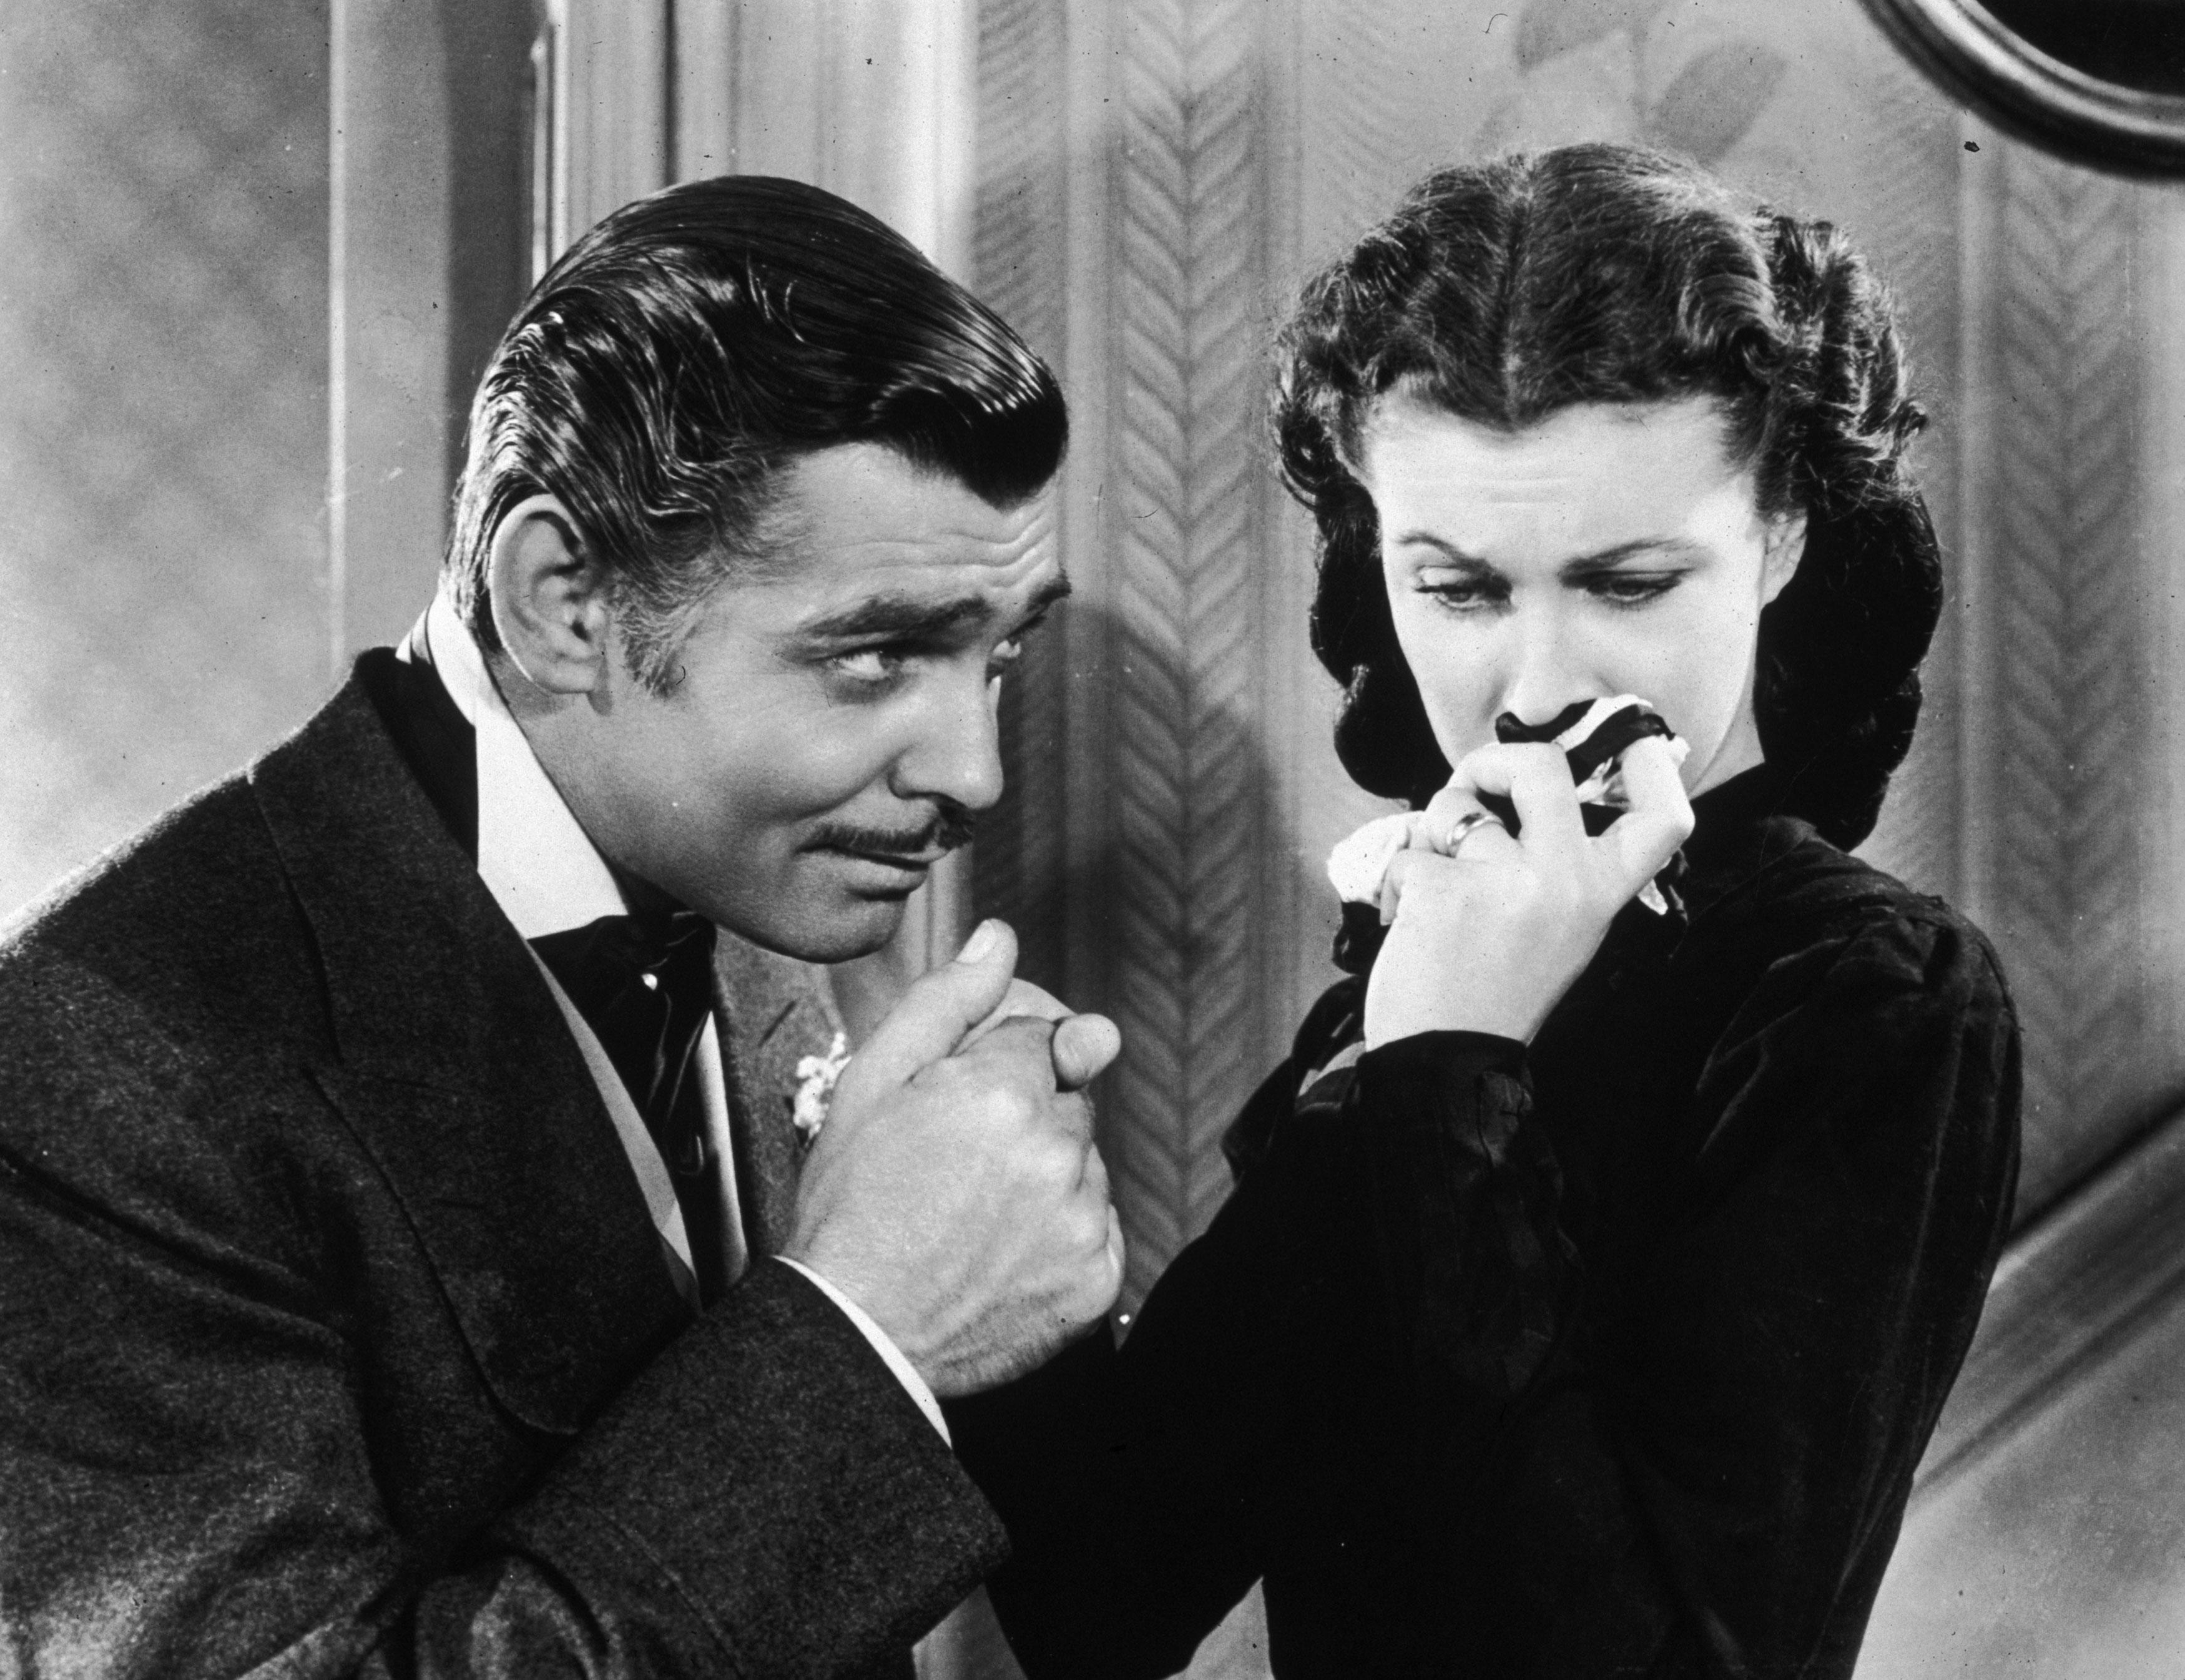 L'acteur Clark Gable dans le rôle de Rhett Butler et Vivien Leigh qui joue Scarlett O'Hara dans le film "Autant en emporte le vent". [Archive /Getty Images]